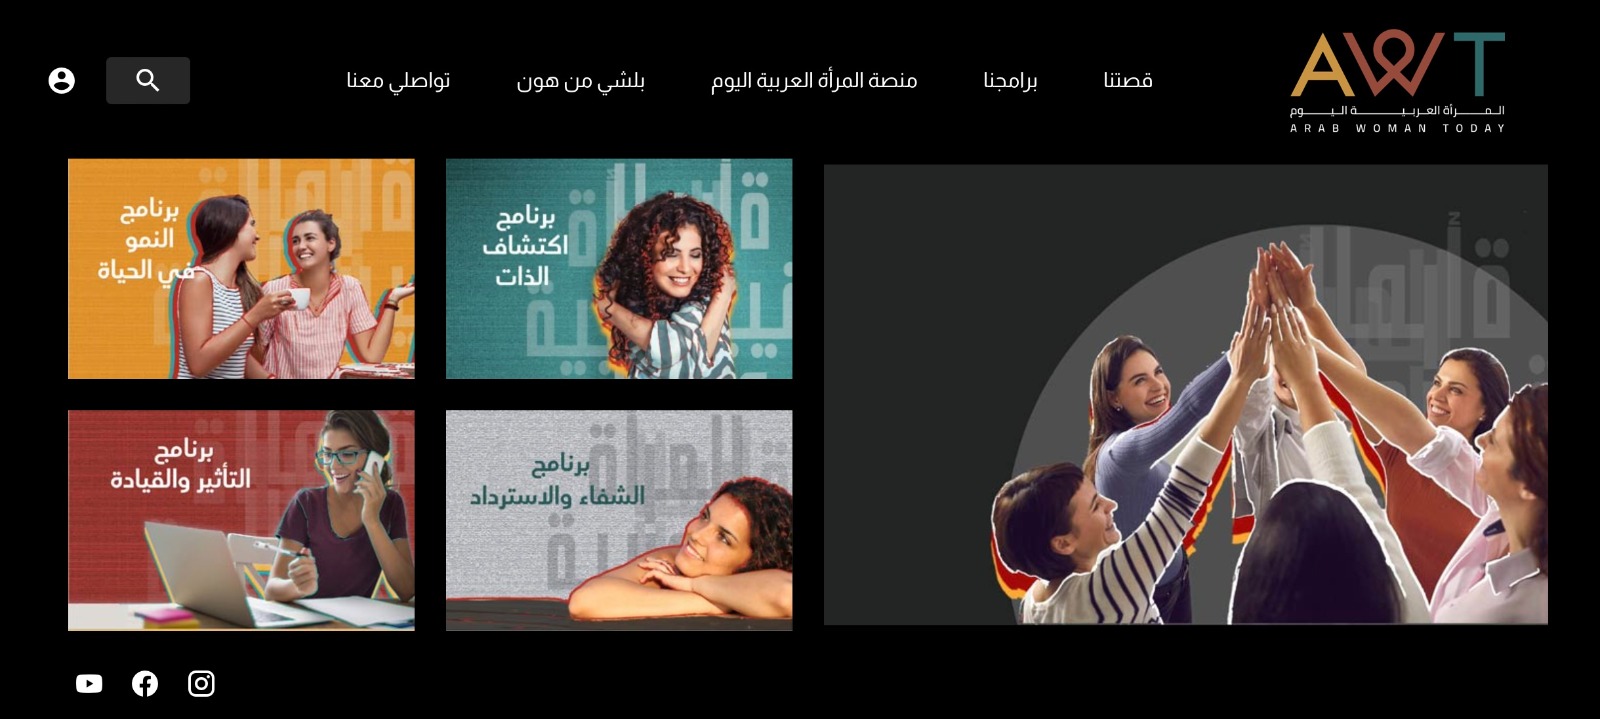  مركز  المرأة العربية يطلق أكبر منصة إلكترونية تُعنى بتدريب وتطوير المرأة 